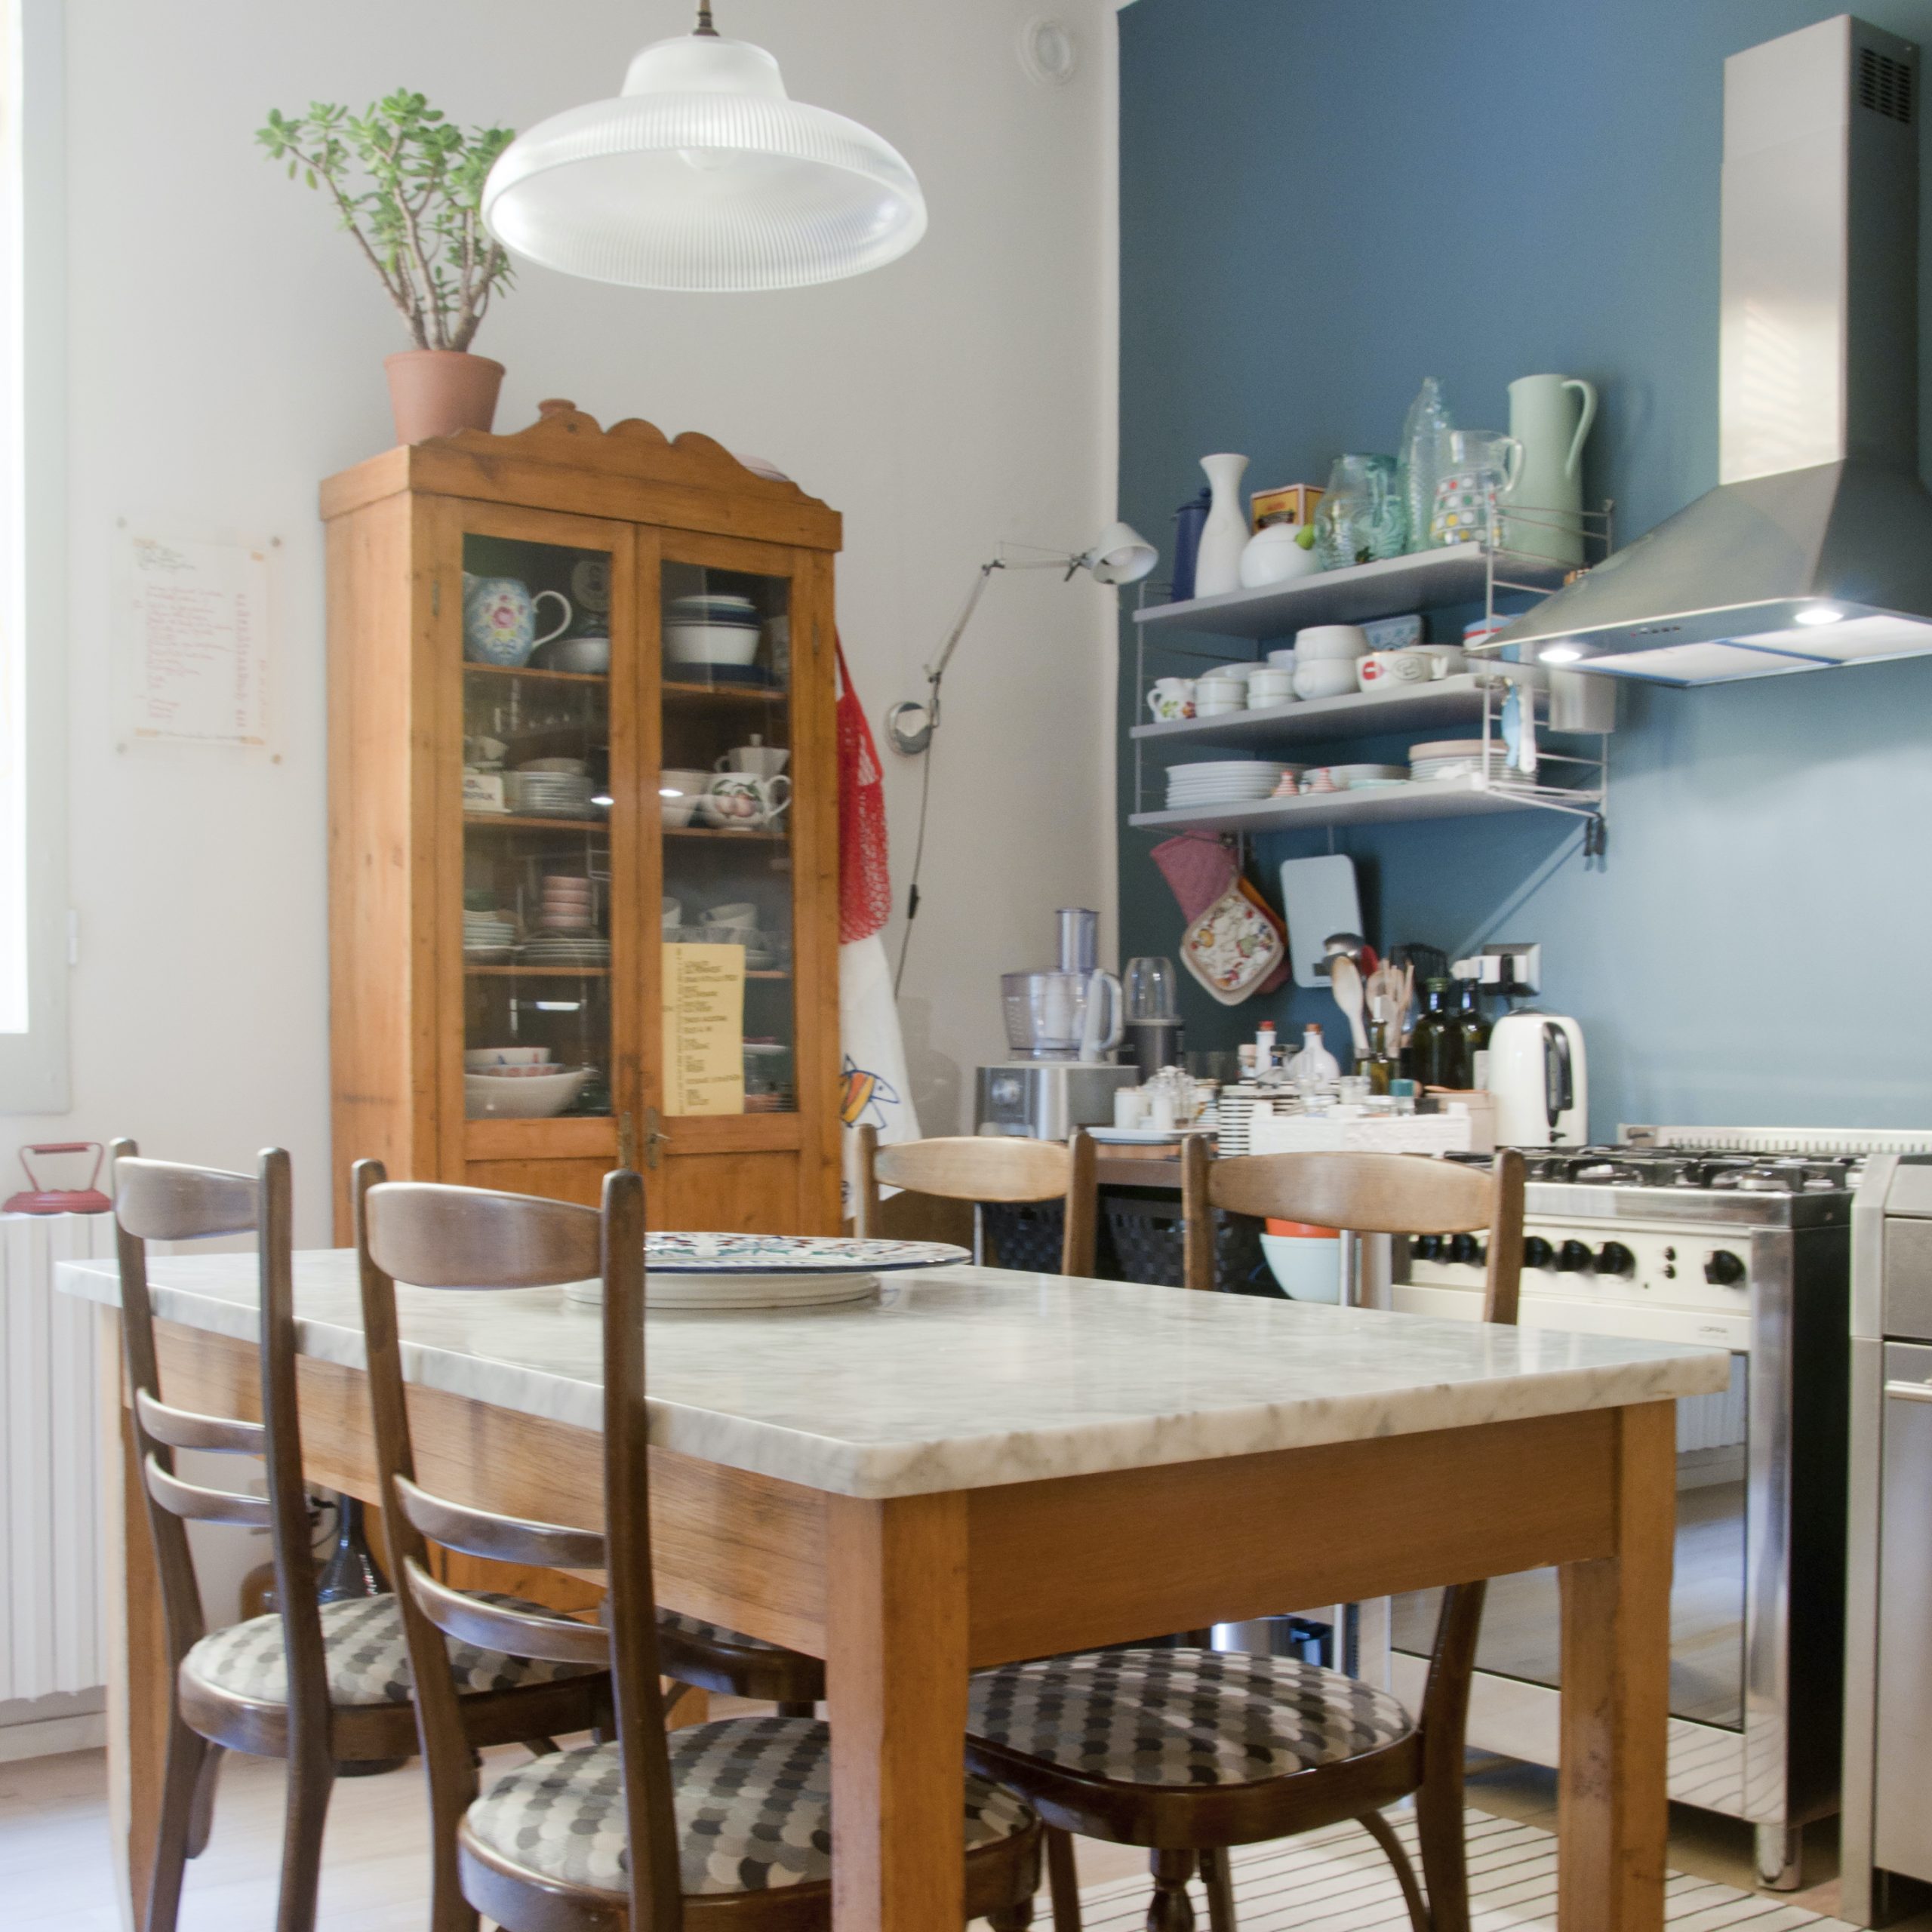 Labò Home Decor - Blog - una casa in stile anni '50 nel cuore di Bologna - cucina tavolo.jpg